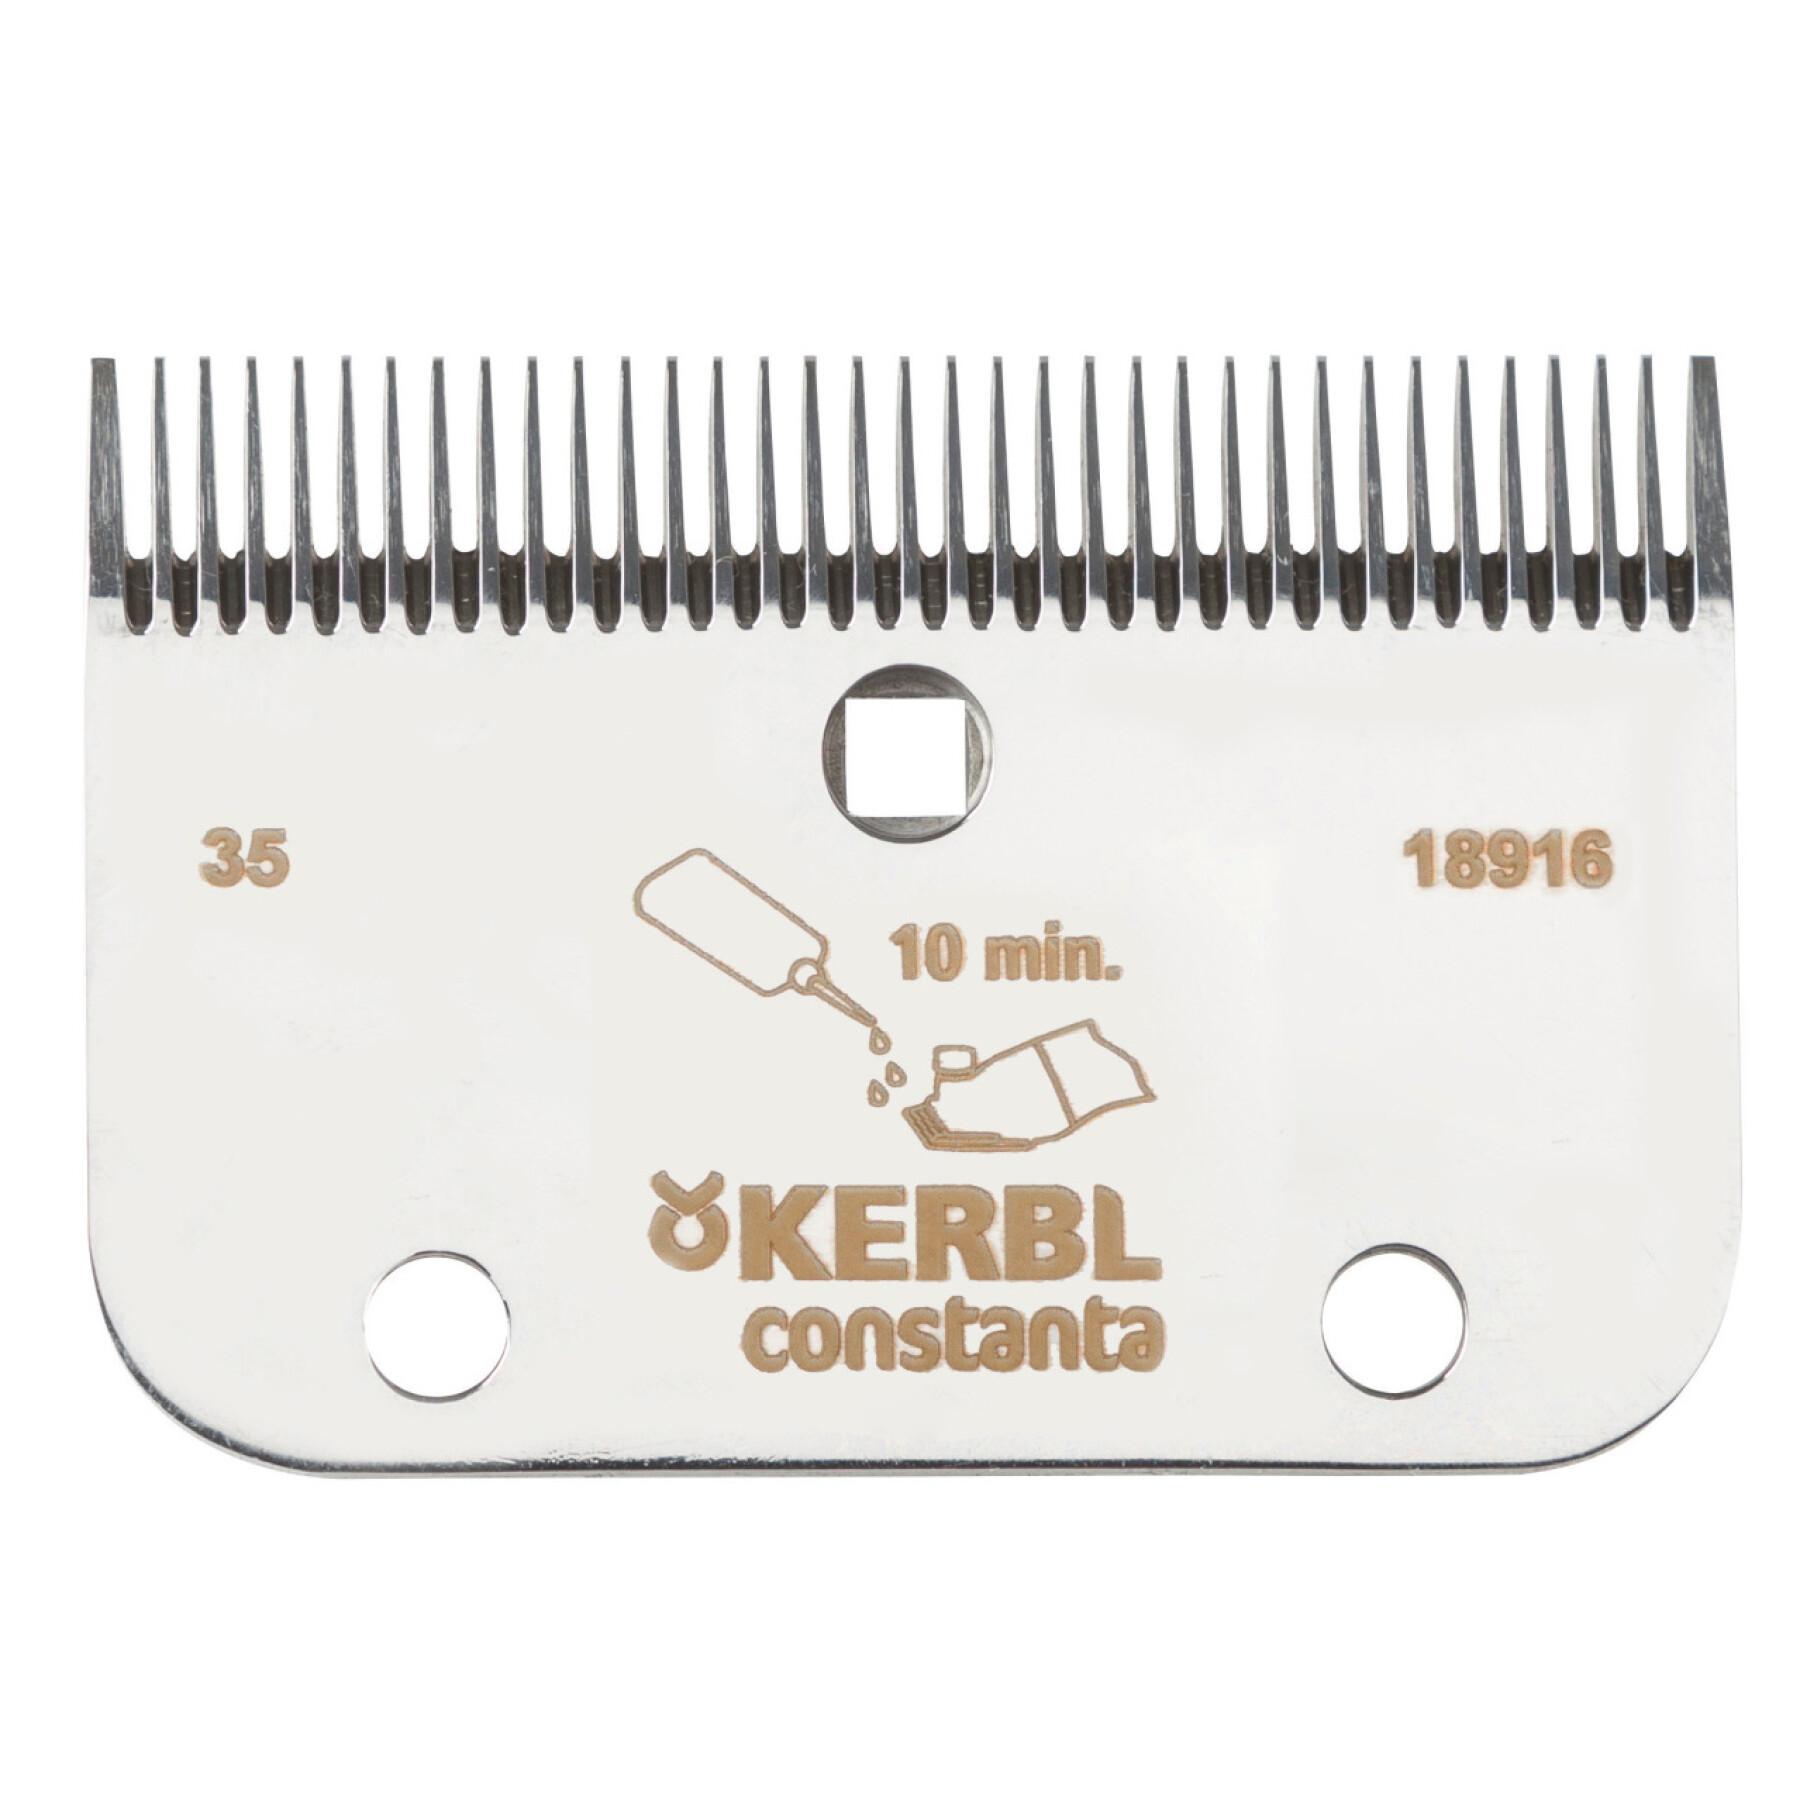 Kamm für Haarschneidemaschine 35/24 Zähne Kerbl Constanta R22